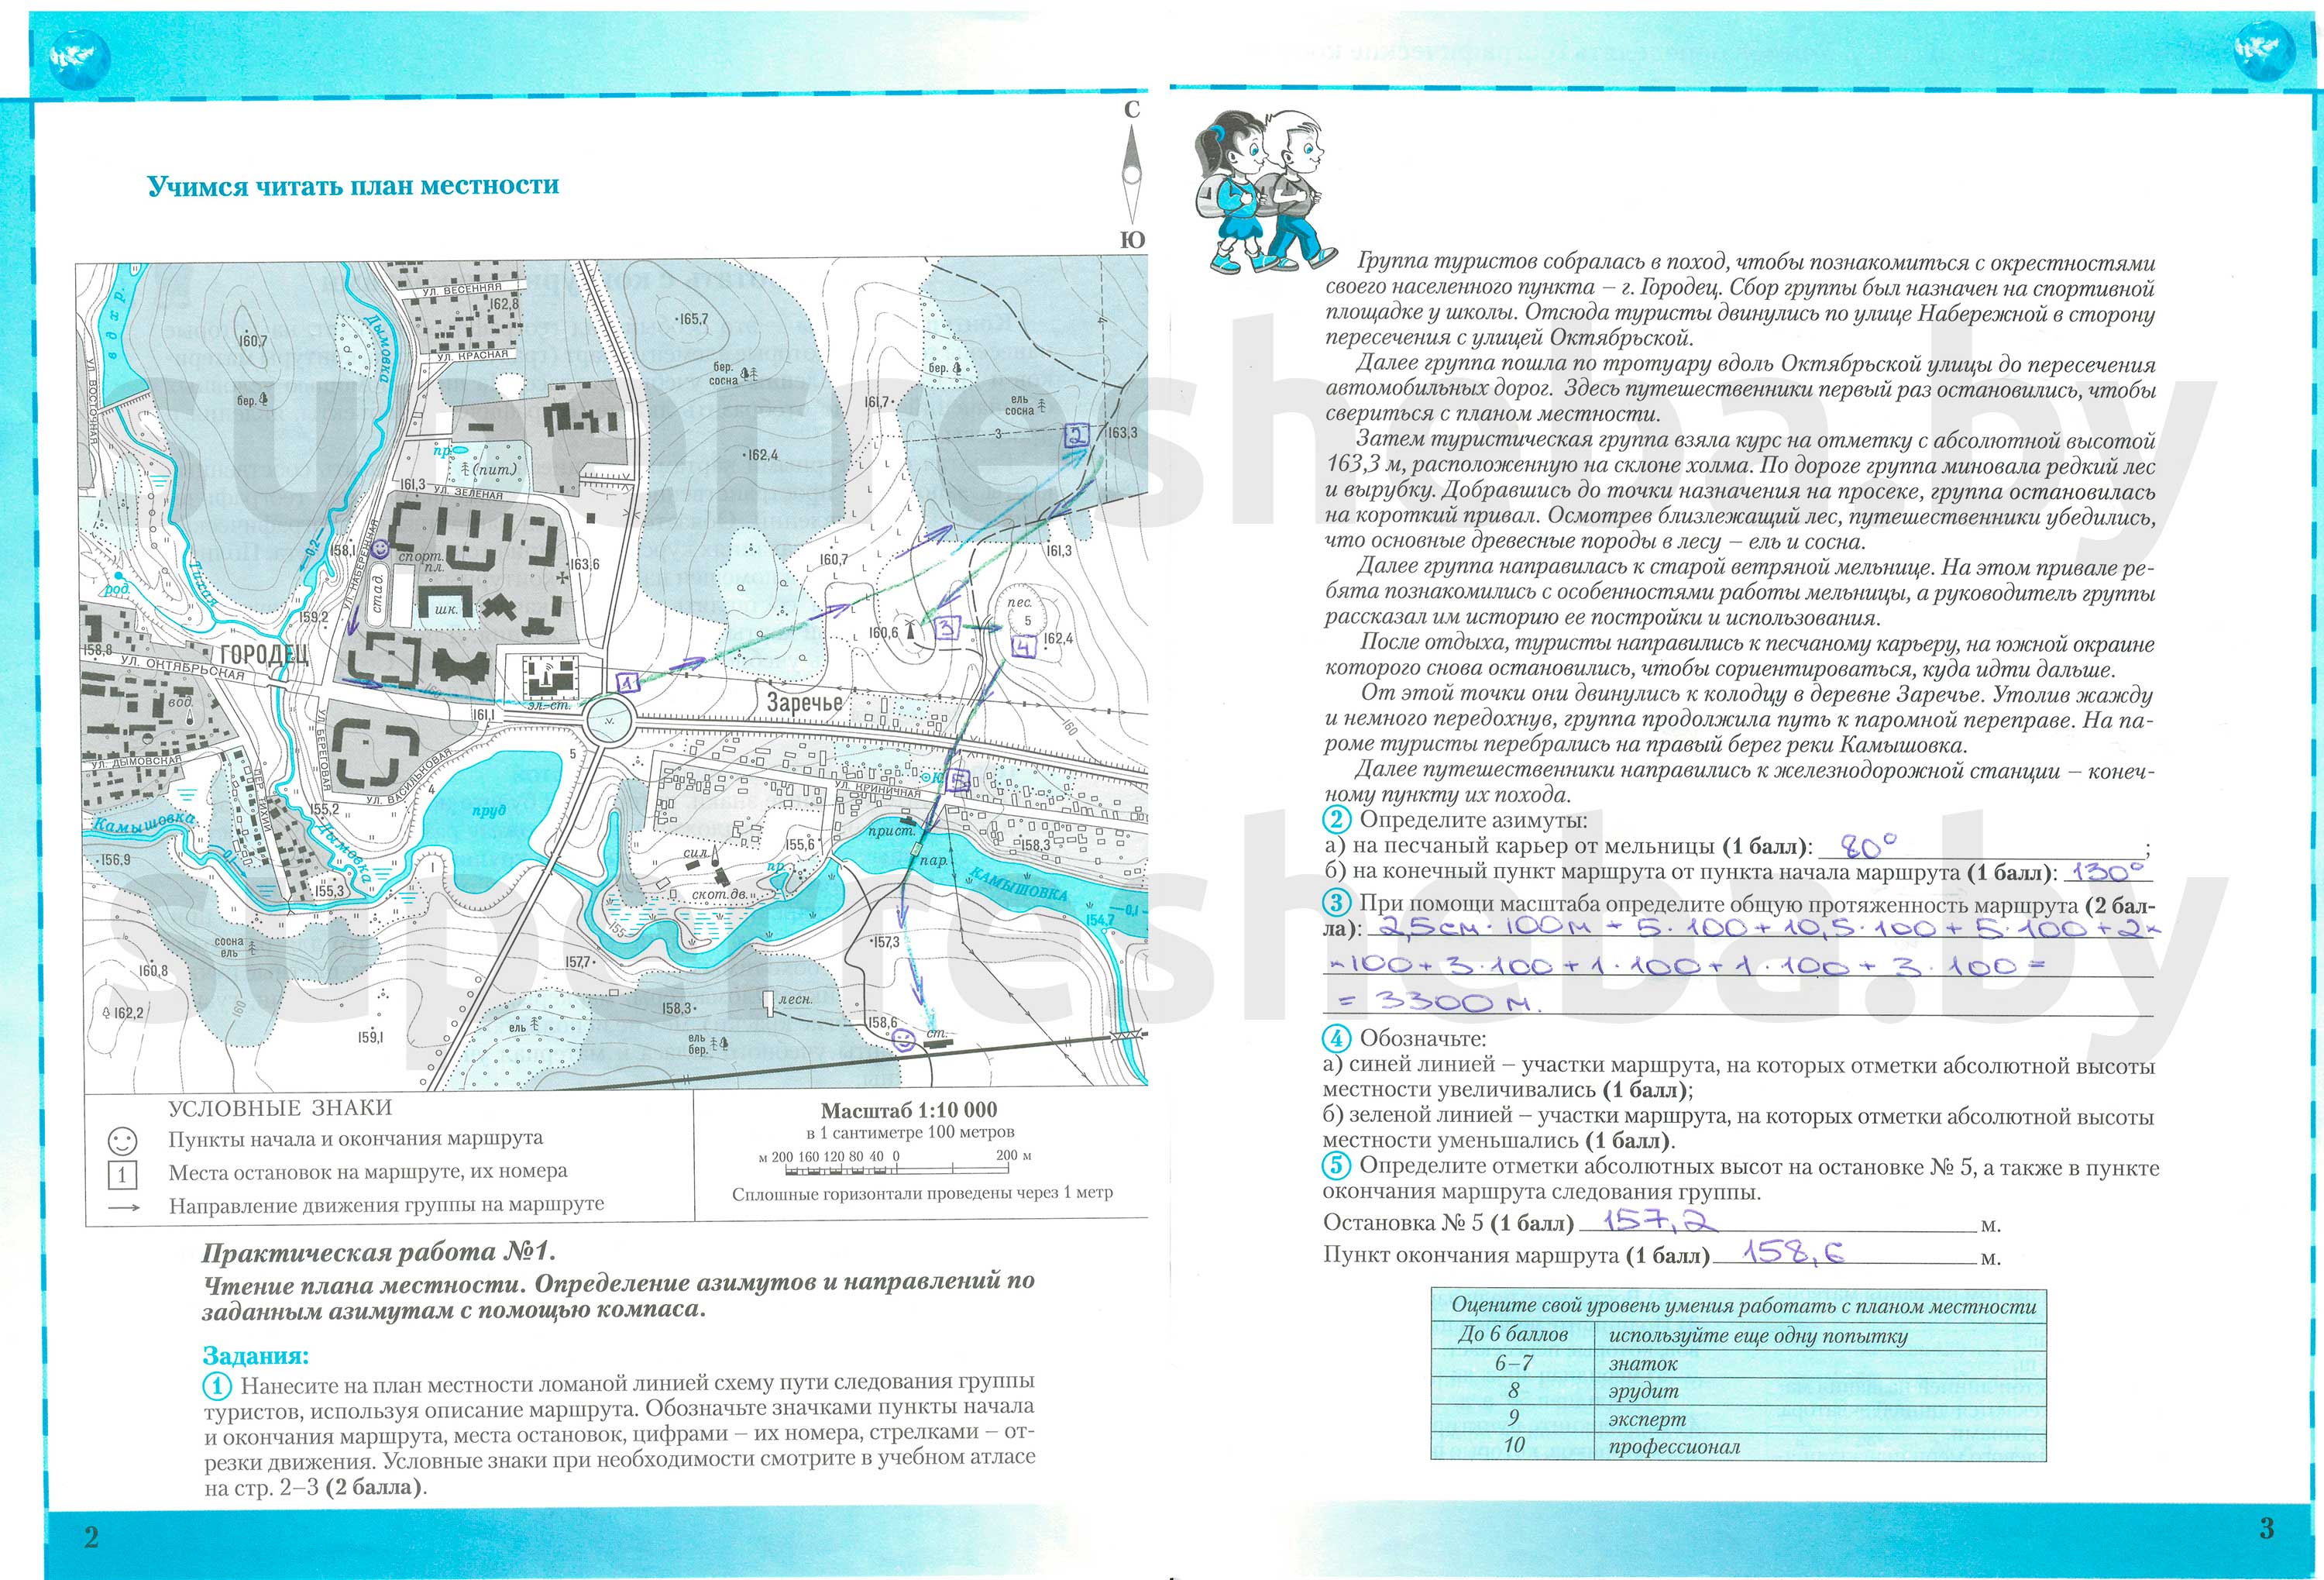 Практическая работа «Учимся читать план местности», стр. 2-3 - решение